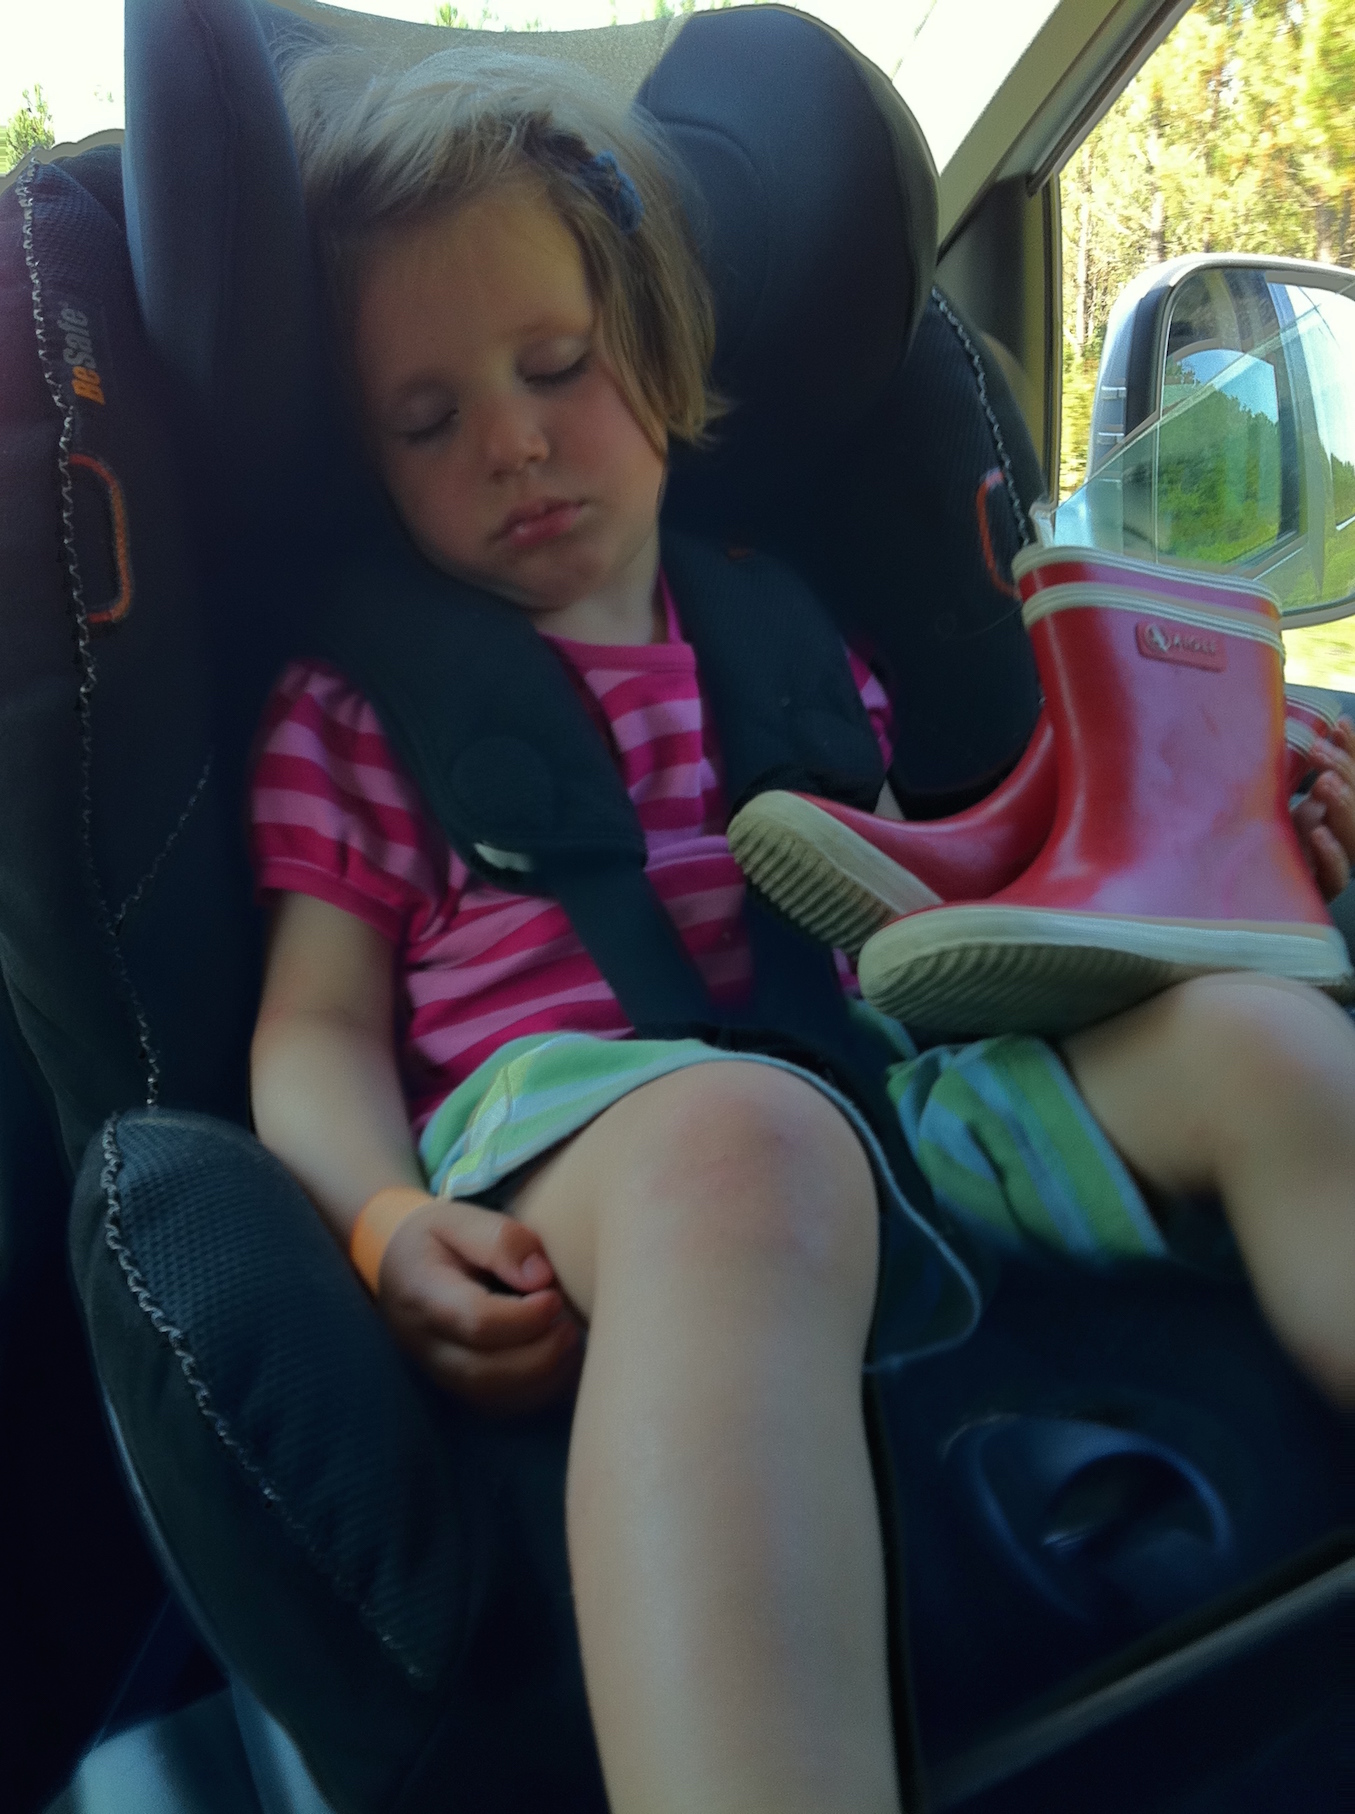 Ruheposition - wie sollte mein Kind sitzen?